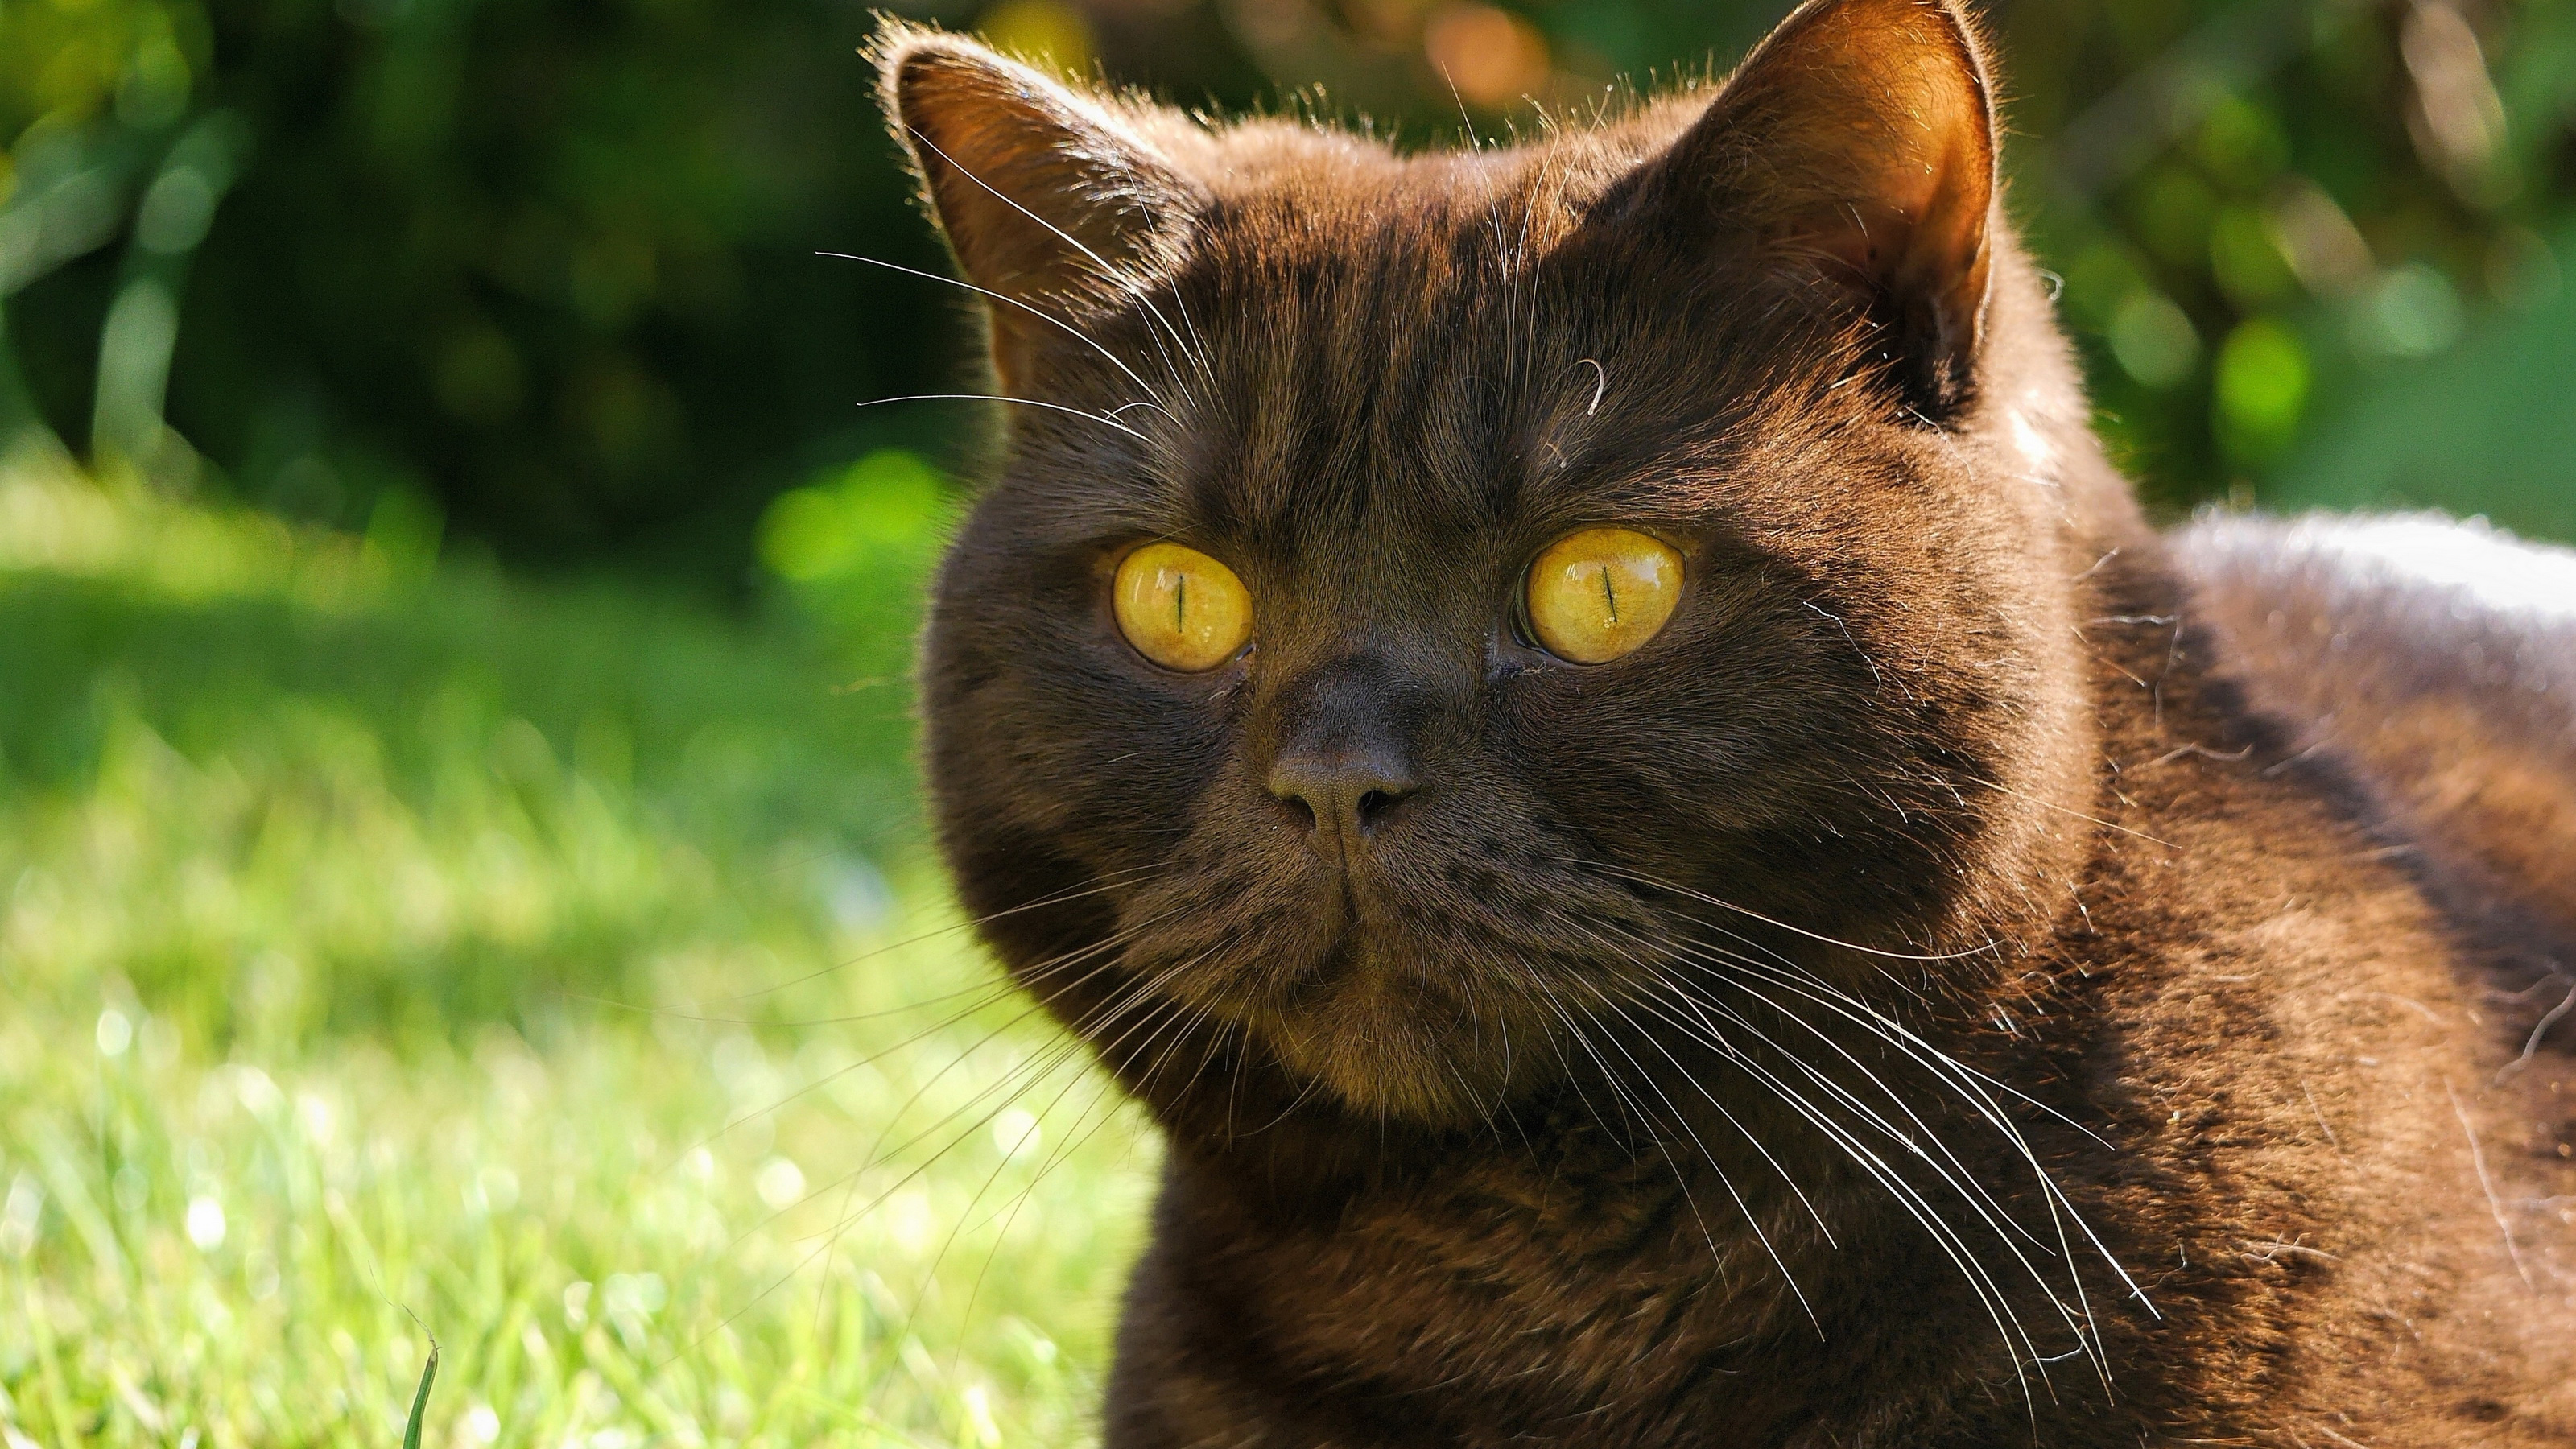 عکس منحصر به فرد و دیدنی از گربه با چشمان زرد رنگ